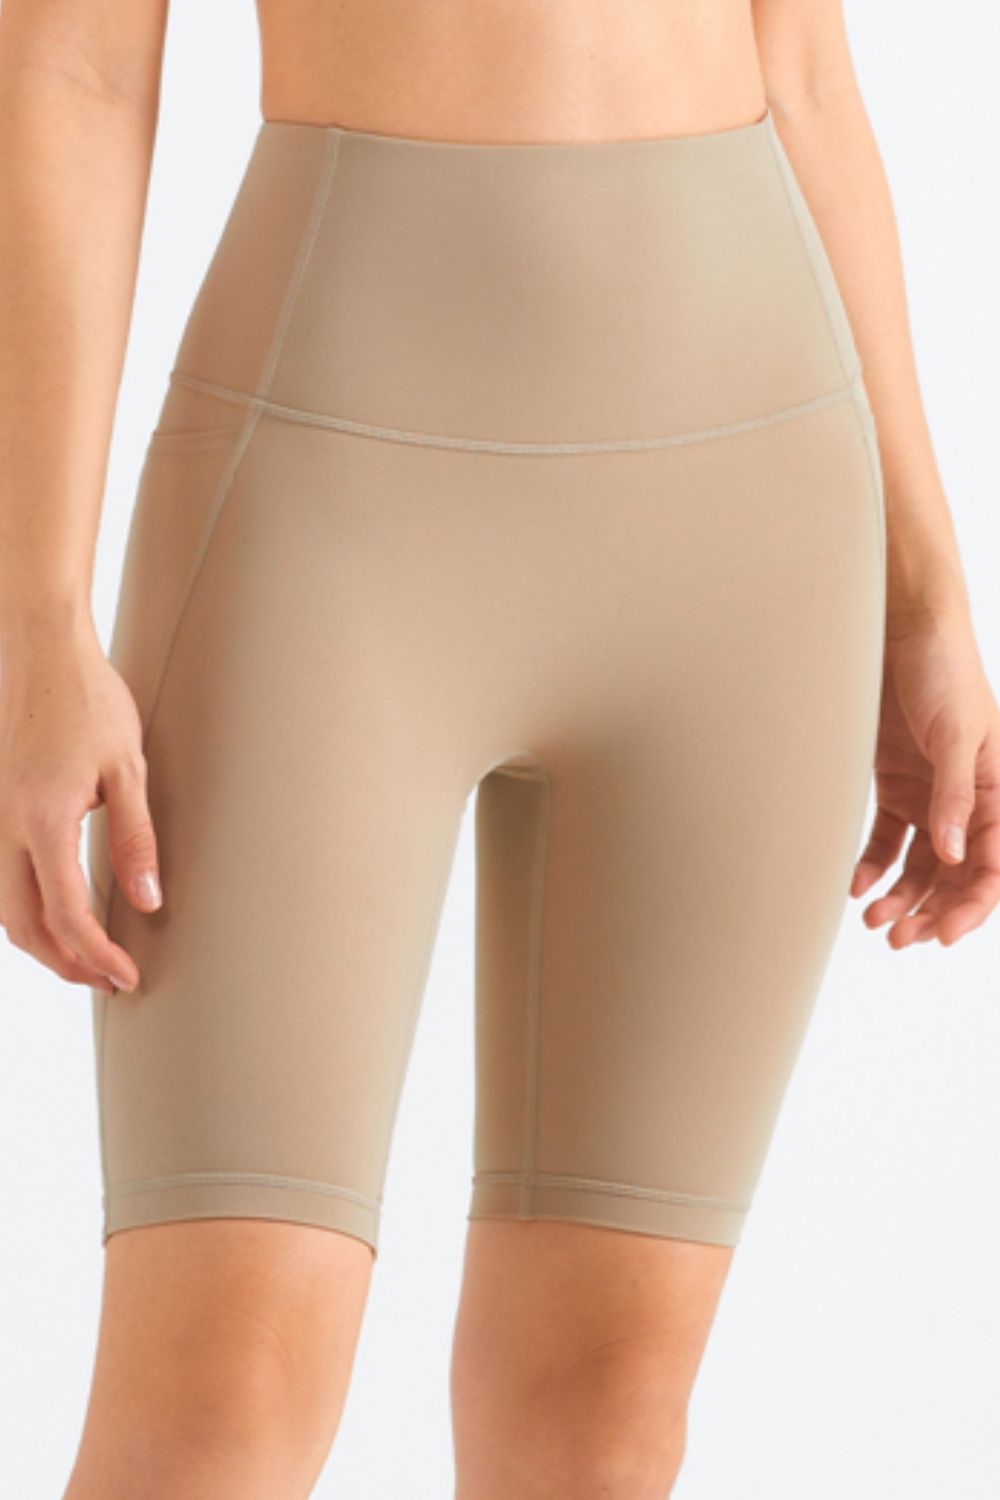 Elation Pocket Shorts - Lamoille Yoga